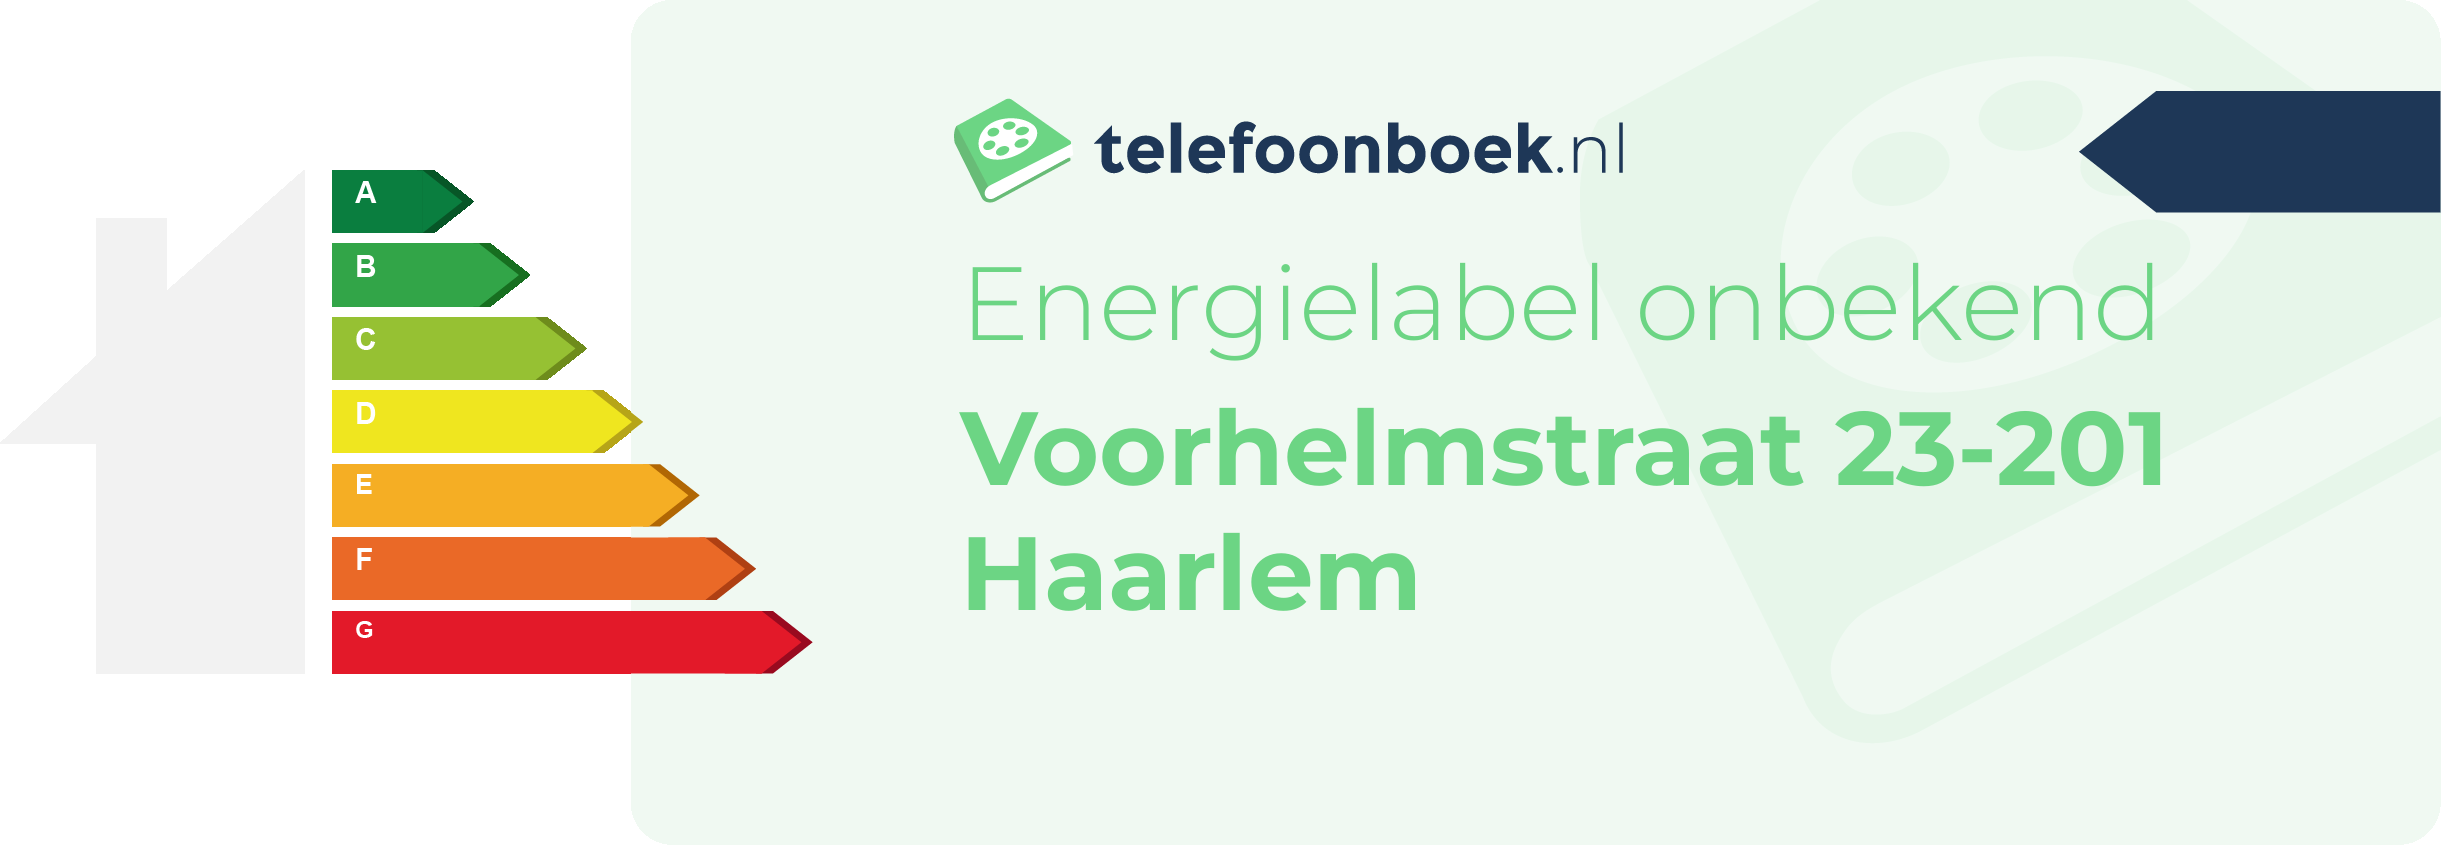 Energielabel Voorhelmstraat 23-201 Haarlem